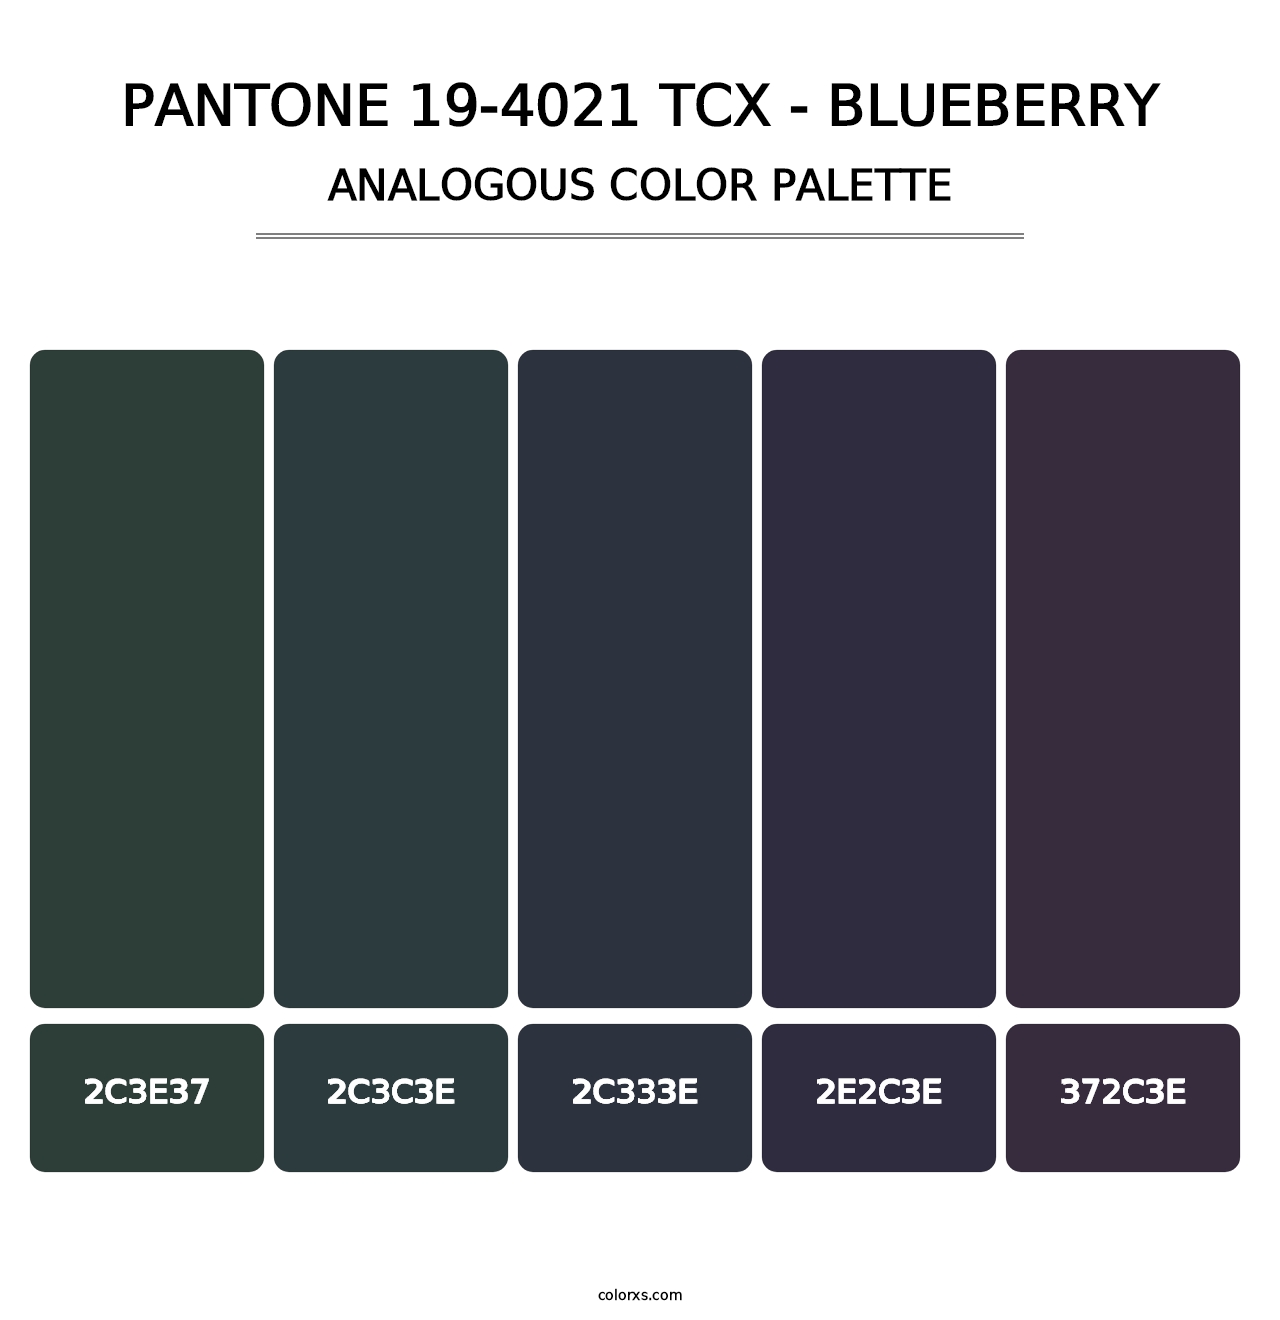 PANTONE 19-4021 TCX - Blueberry - Analogous Color Palette